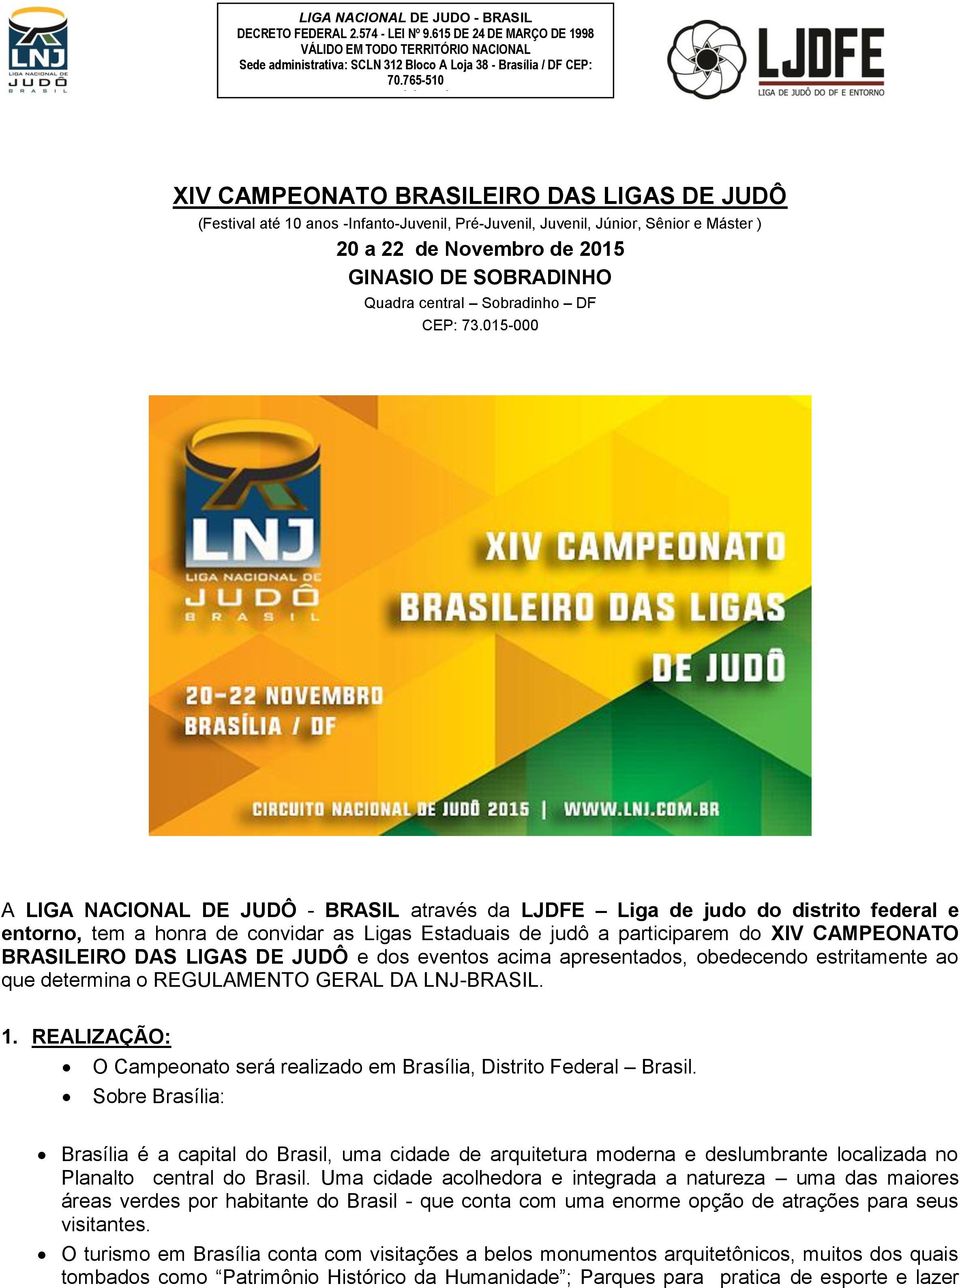 015-000 A LIGA NACIONAL DE JUDÔ - BRASIL através da LJDFE Liga de judo do distrito federal e entorno, tem a honra de convidar as Ligas Estaduais de judô a participarem do XIV CAMPEONATO BRASILEIRO